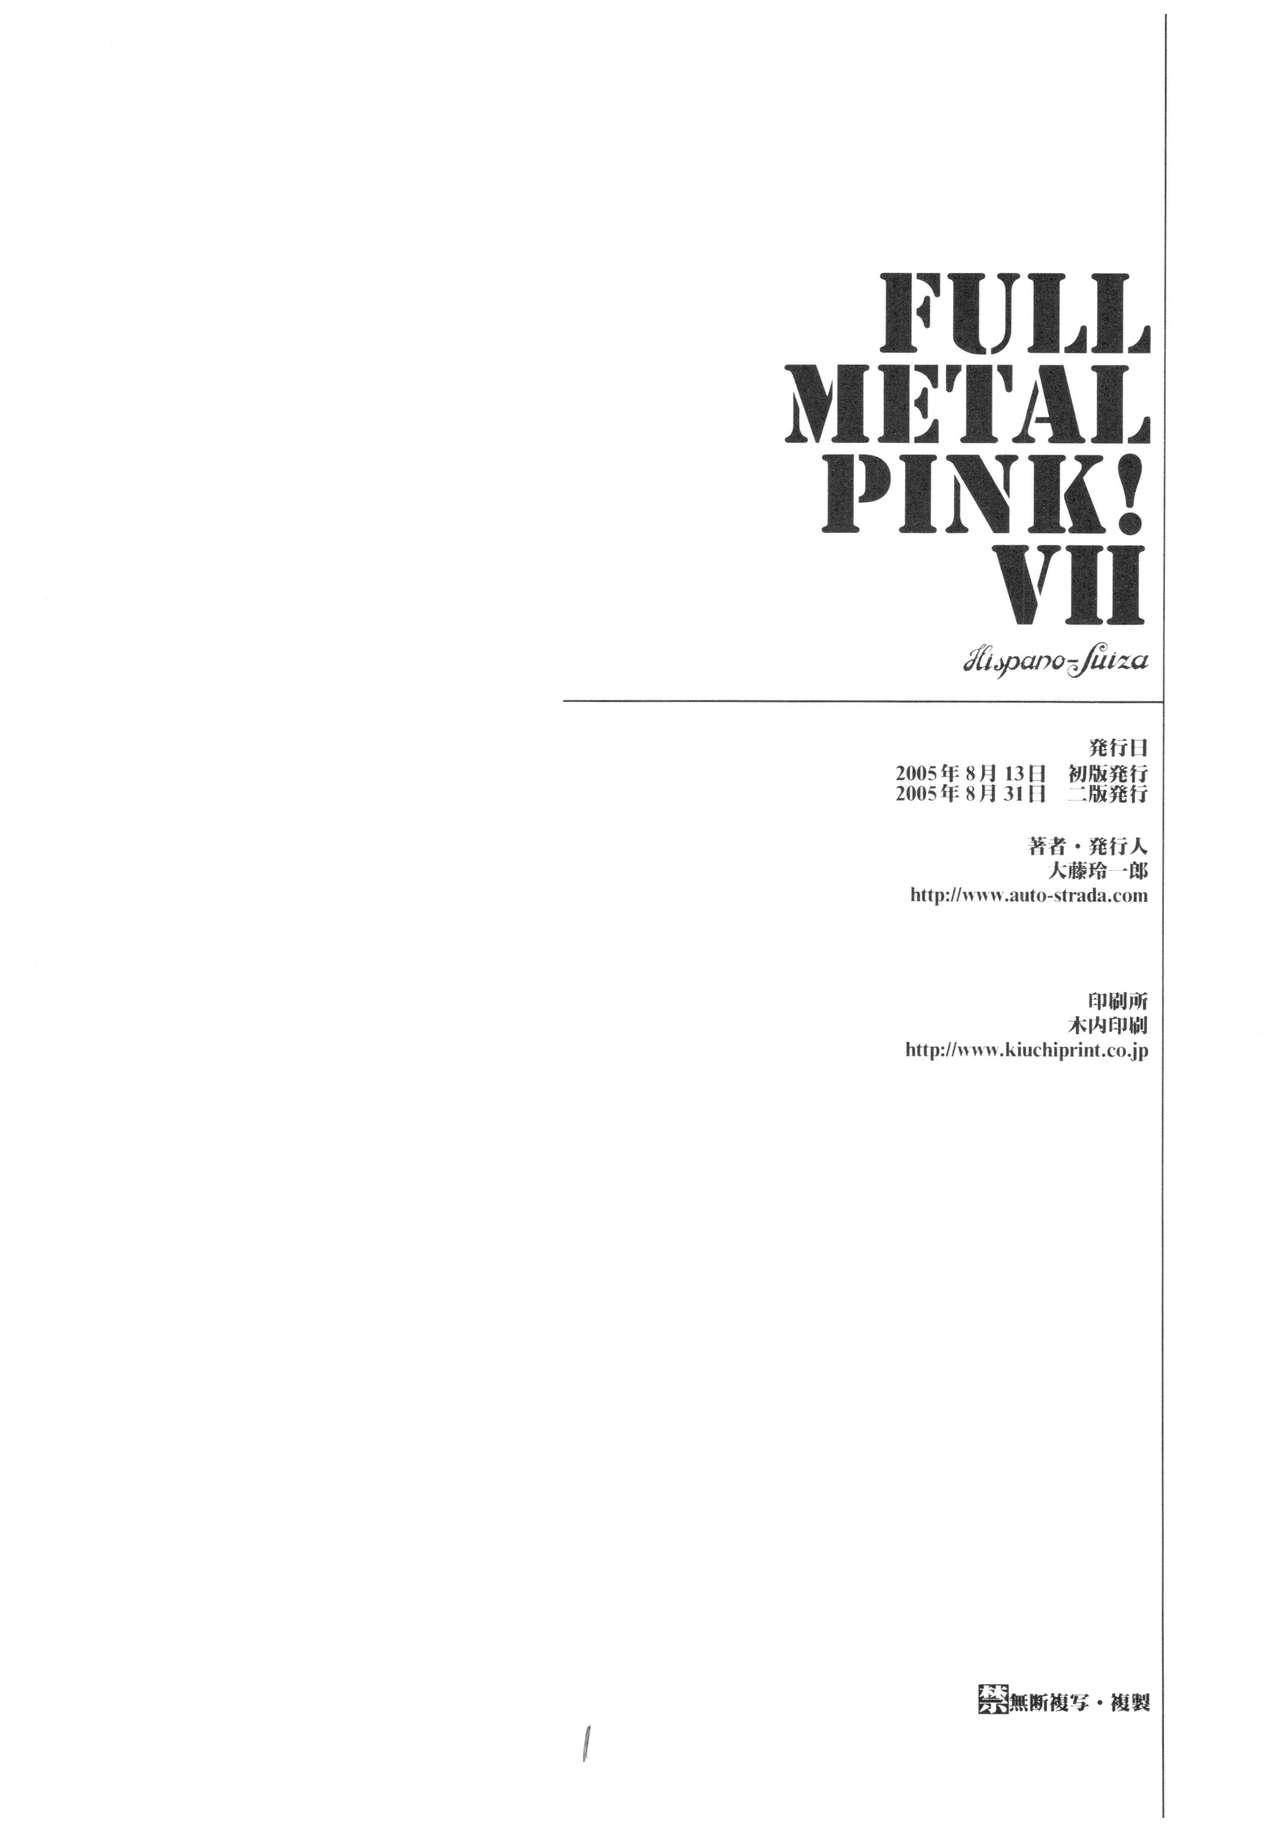 Full Metal Pink! VII 28